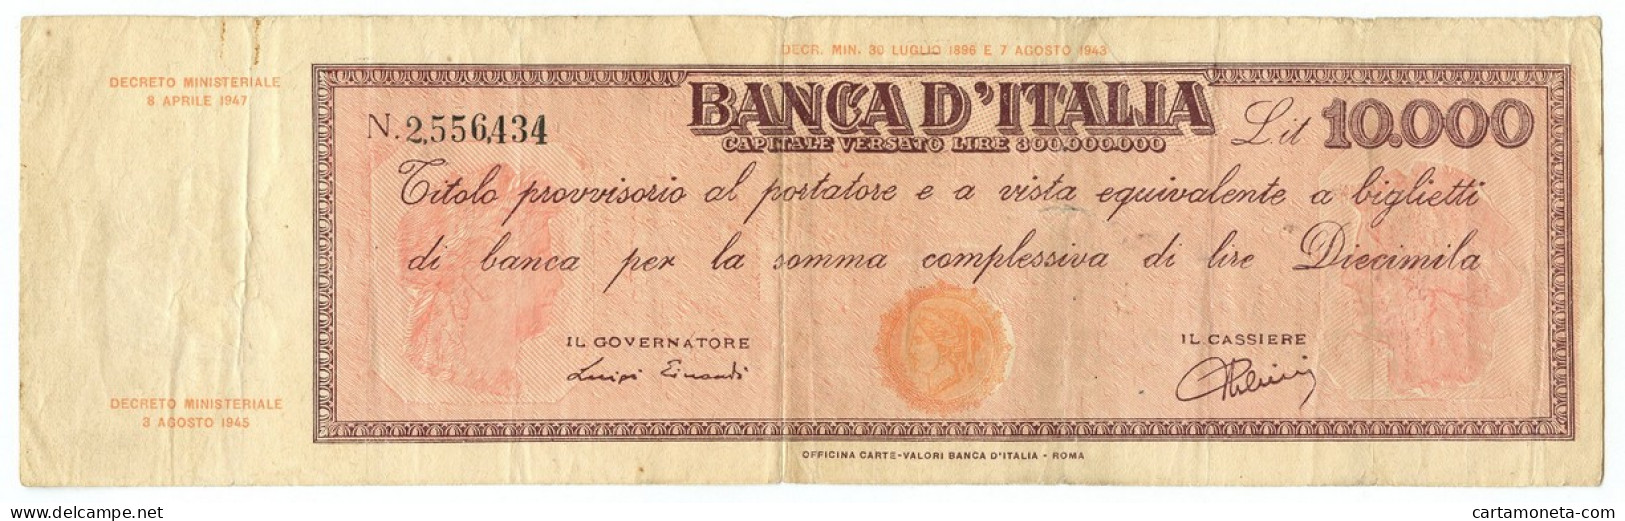 10000 LIRE FALSO D'EPOCA TITOLO PROVVISORIO TESTINA REPUBBLICA IT 08/04/1947 QBB - [ 8] Ficticios & Especimenes